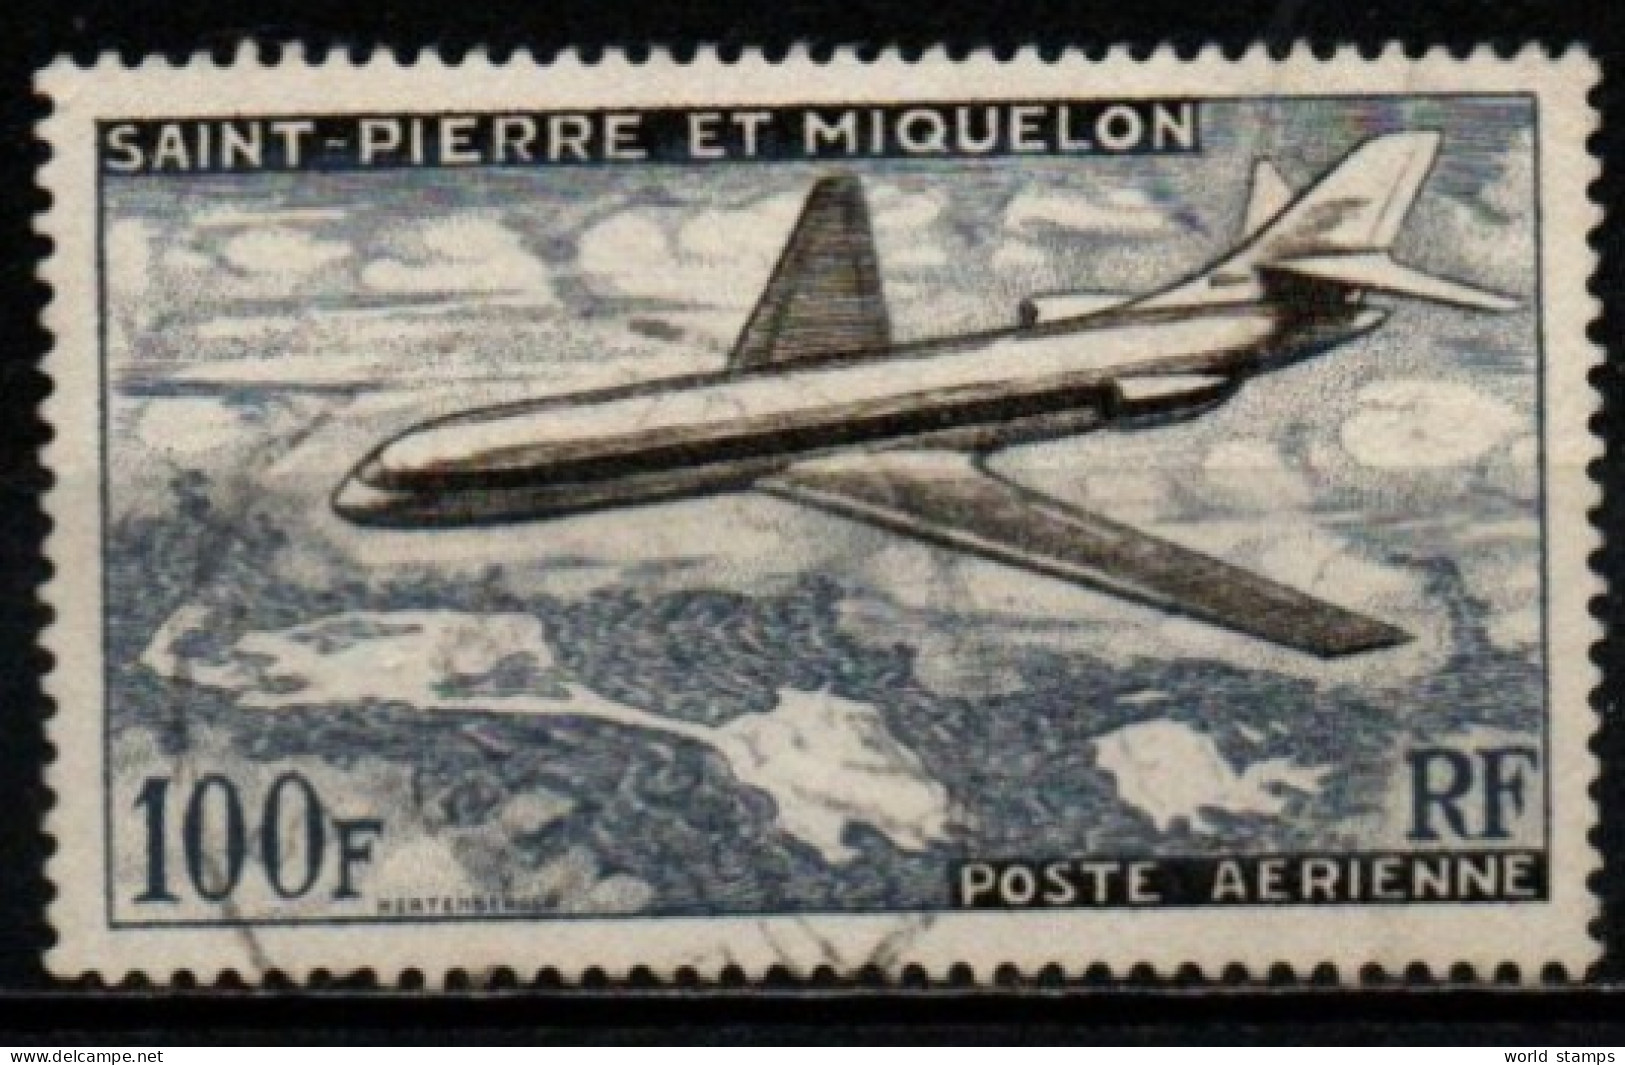 SAINT-PIERRE ET MIQUELON 1957 O - Used Stamps